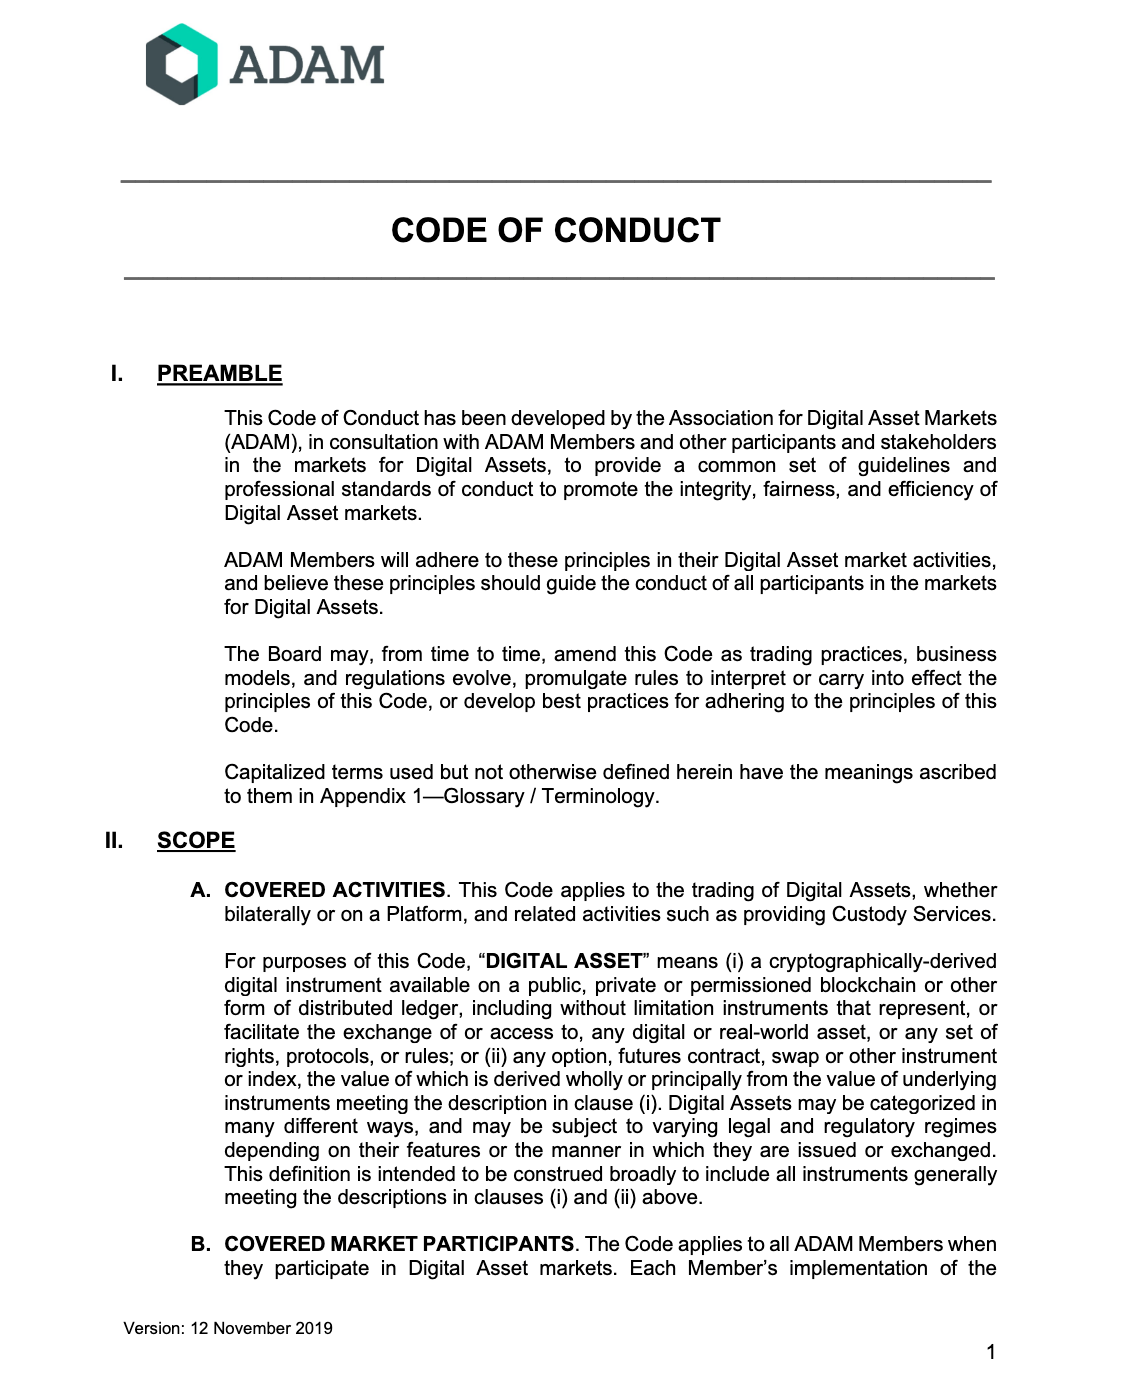 Первая страница кодекса ADAM.